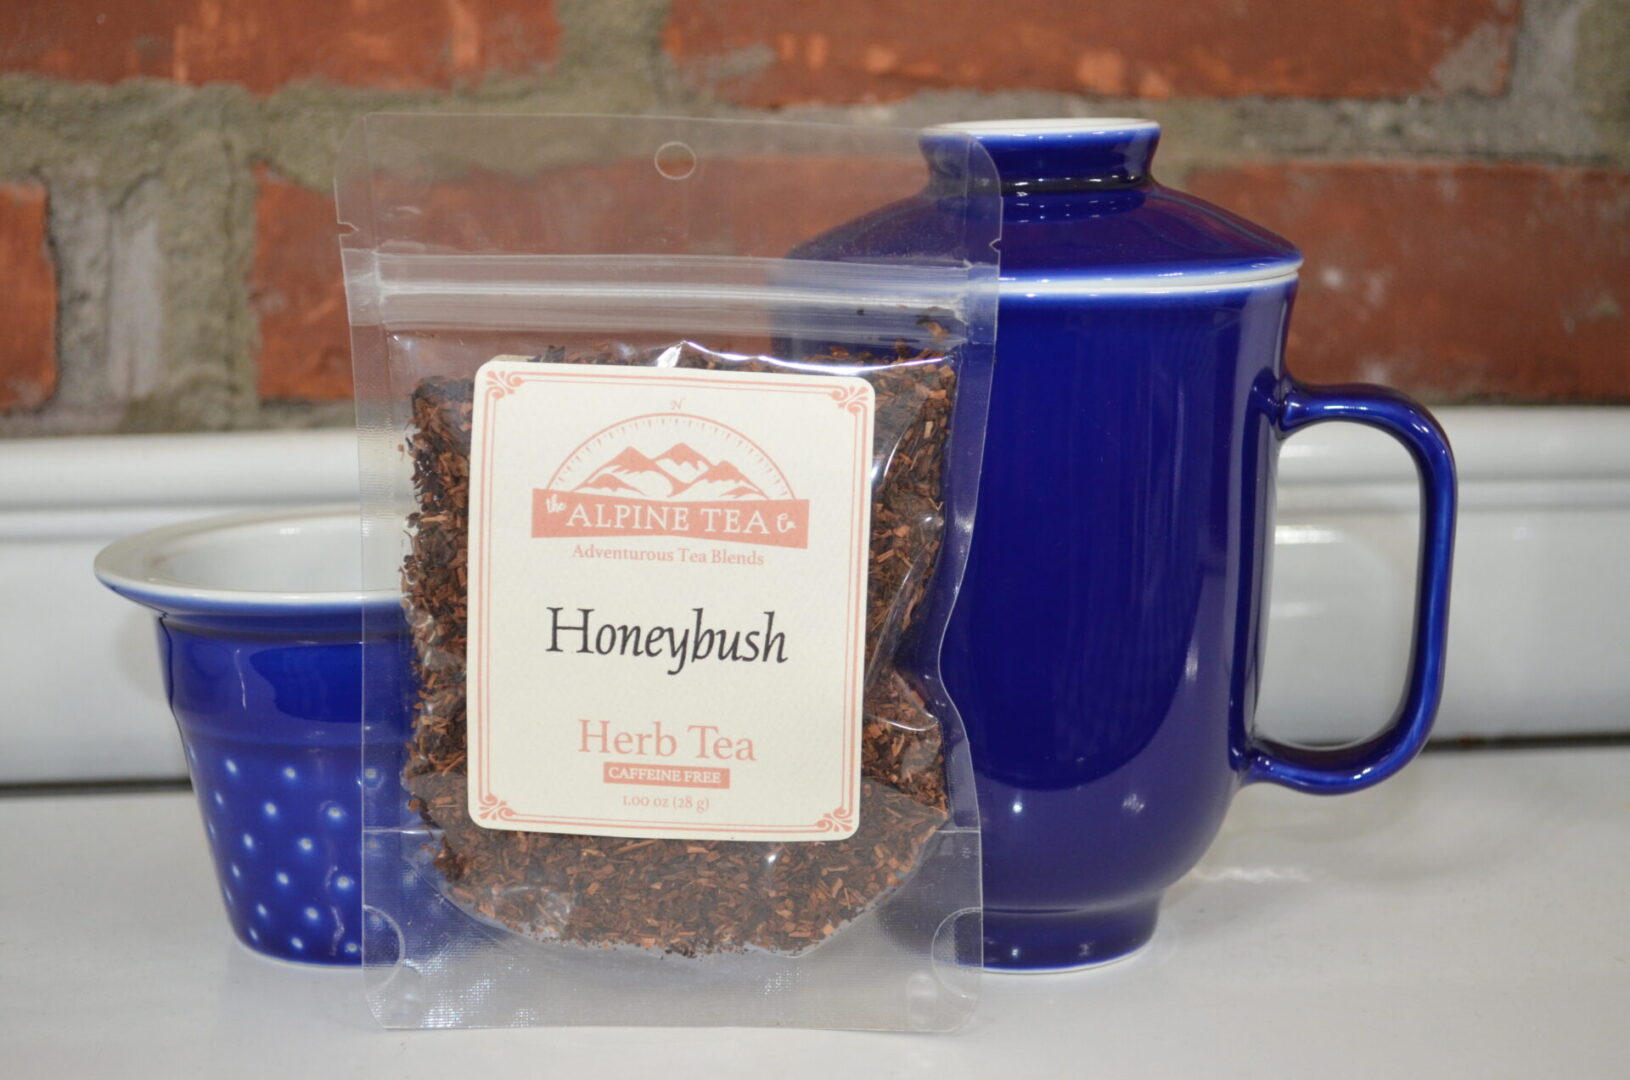 A bag of honey bush tea sitting next to a blue mug.